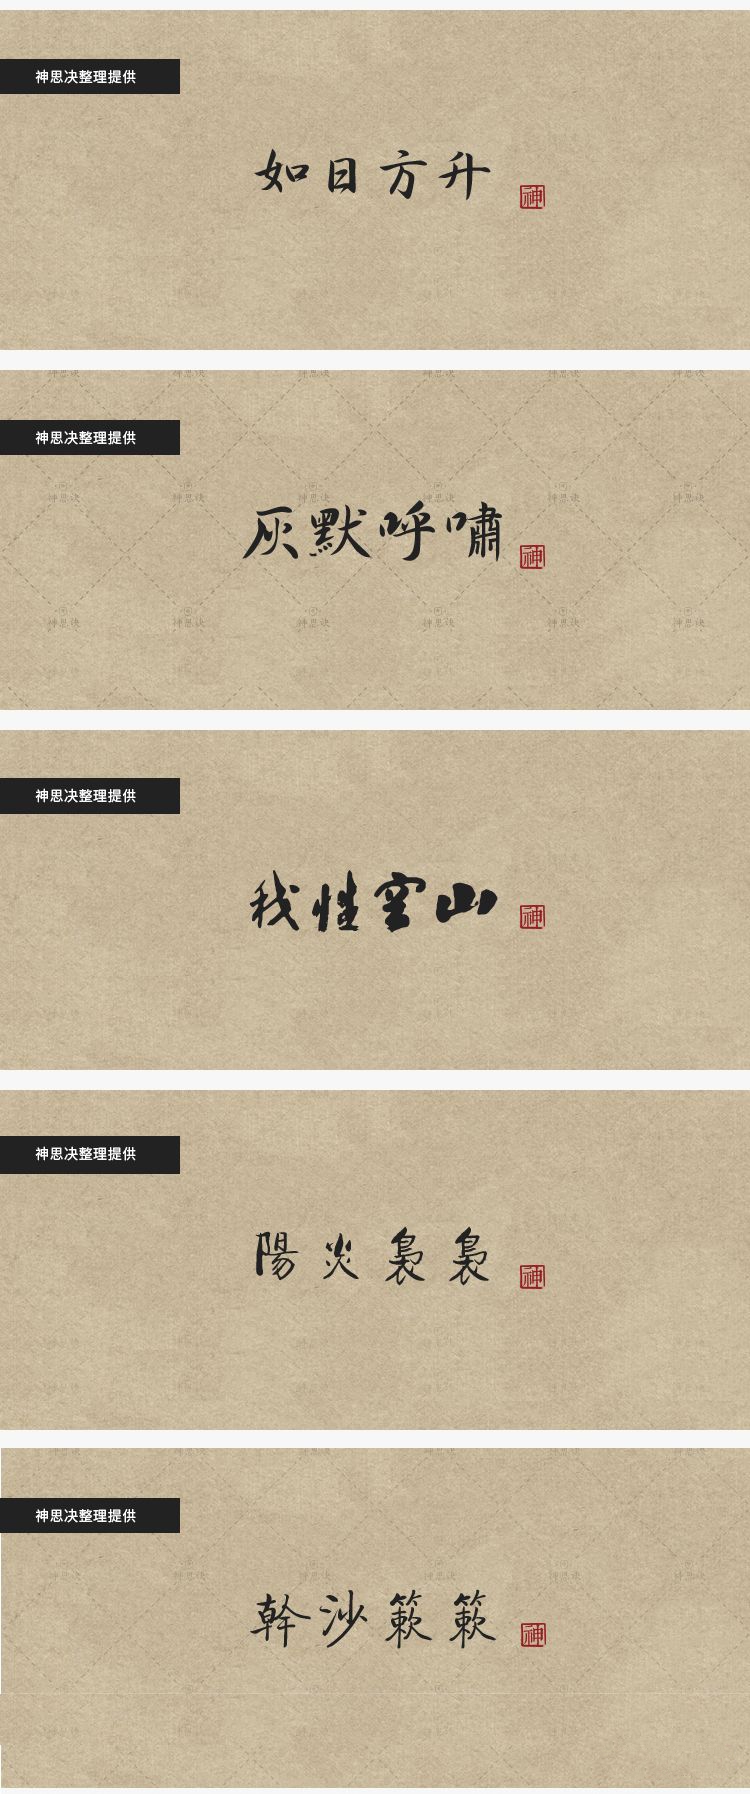 【195期】92款古韵中文字体，带你领略文字的美